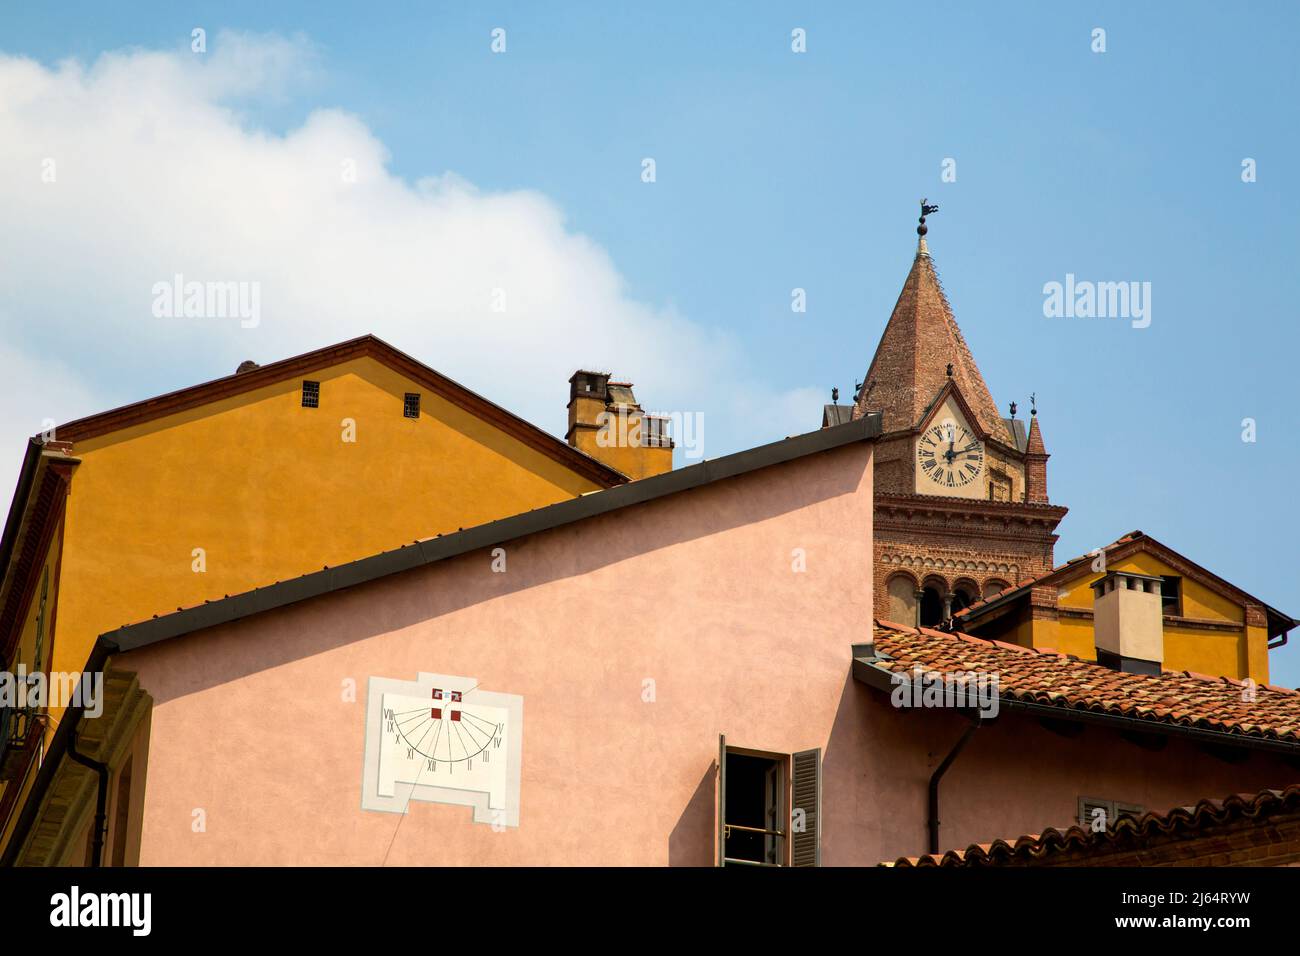 Gebäude in Alba mit verschiedenen Architekturstilen, darunter der Turm der Chiesa di San Domenica. Stockfoto